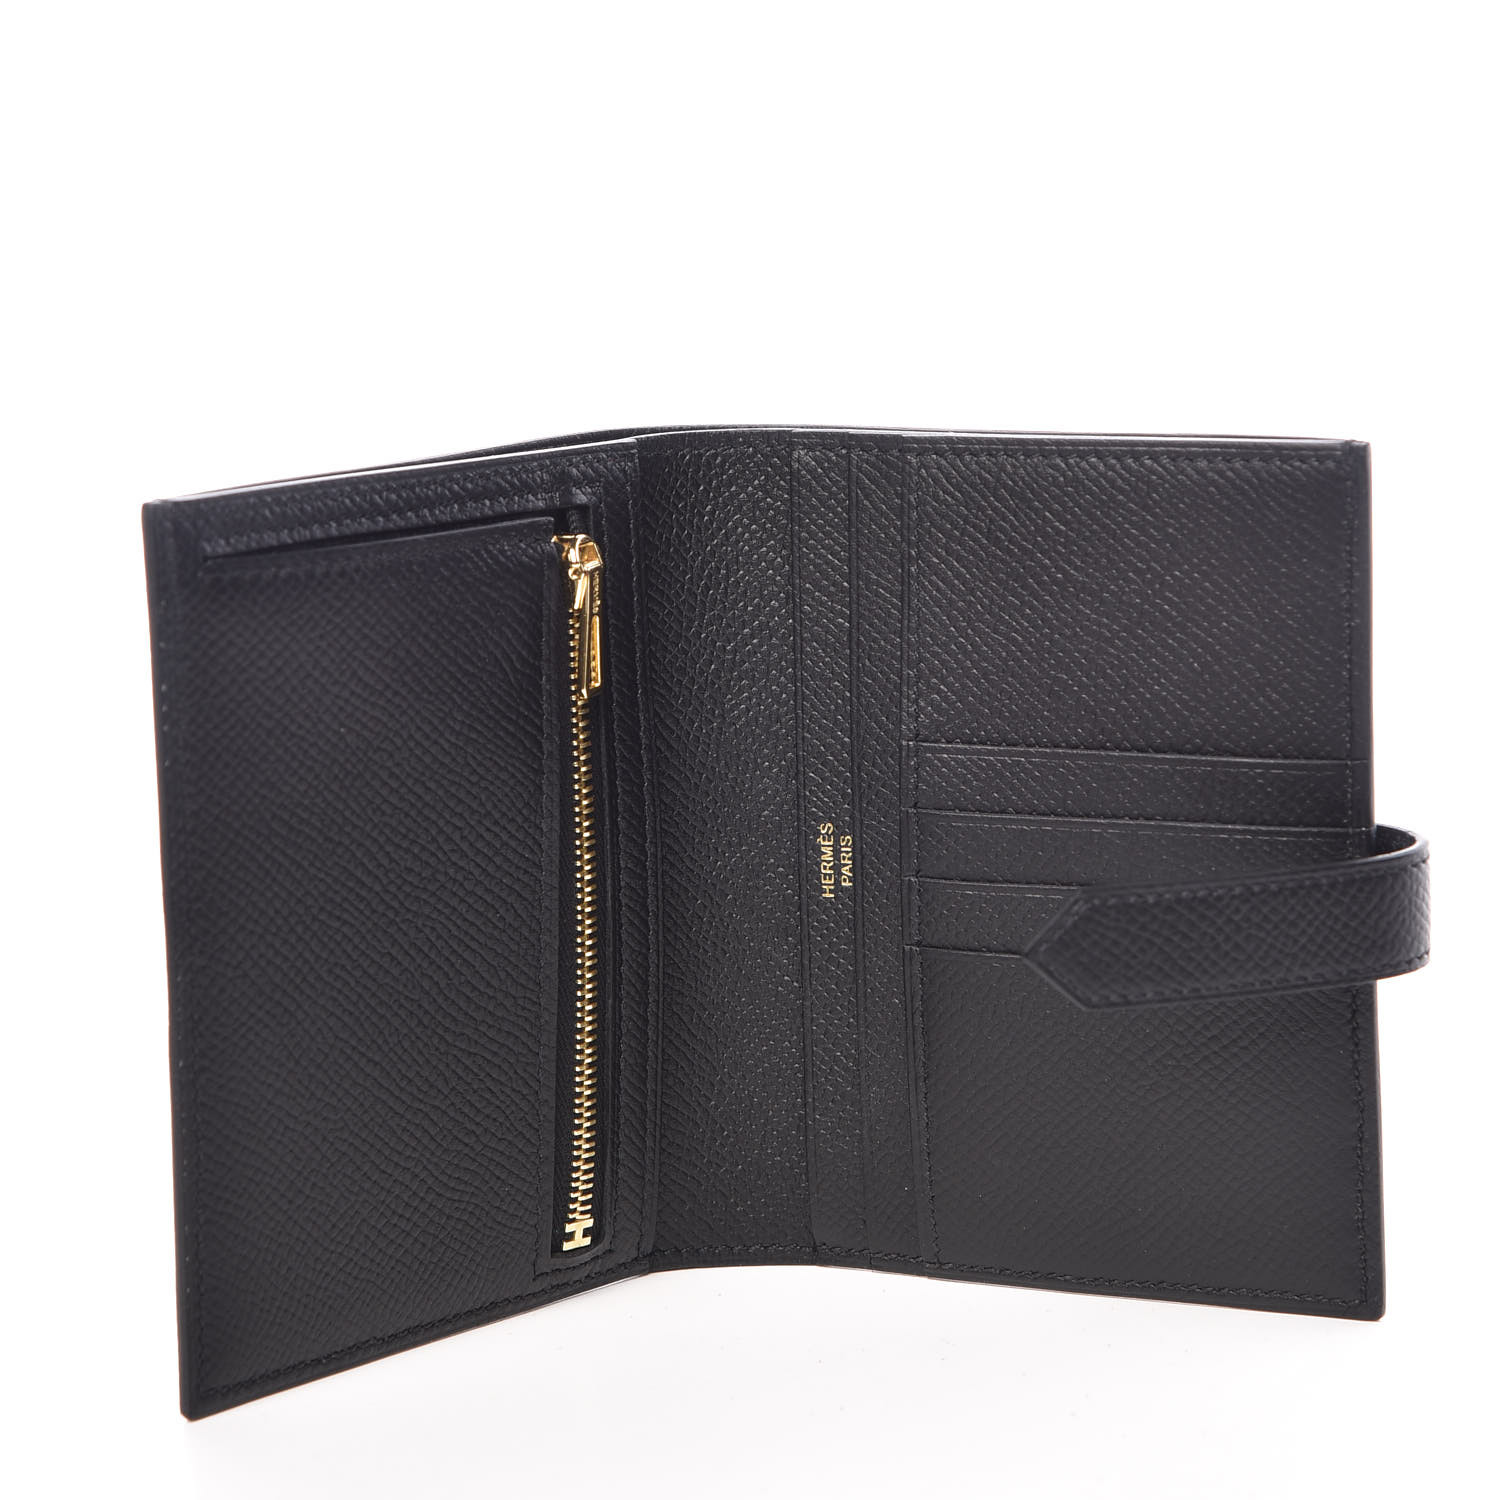 HERMES Epsom Bearn Compact Wallet Black 371469